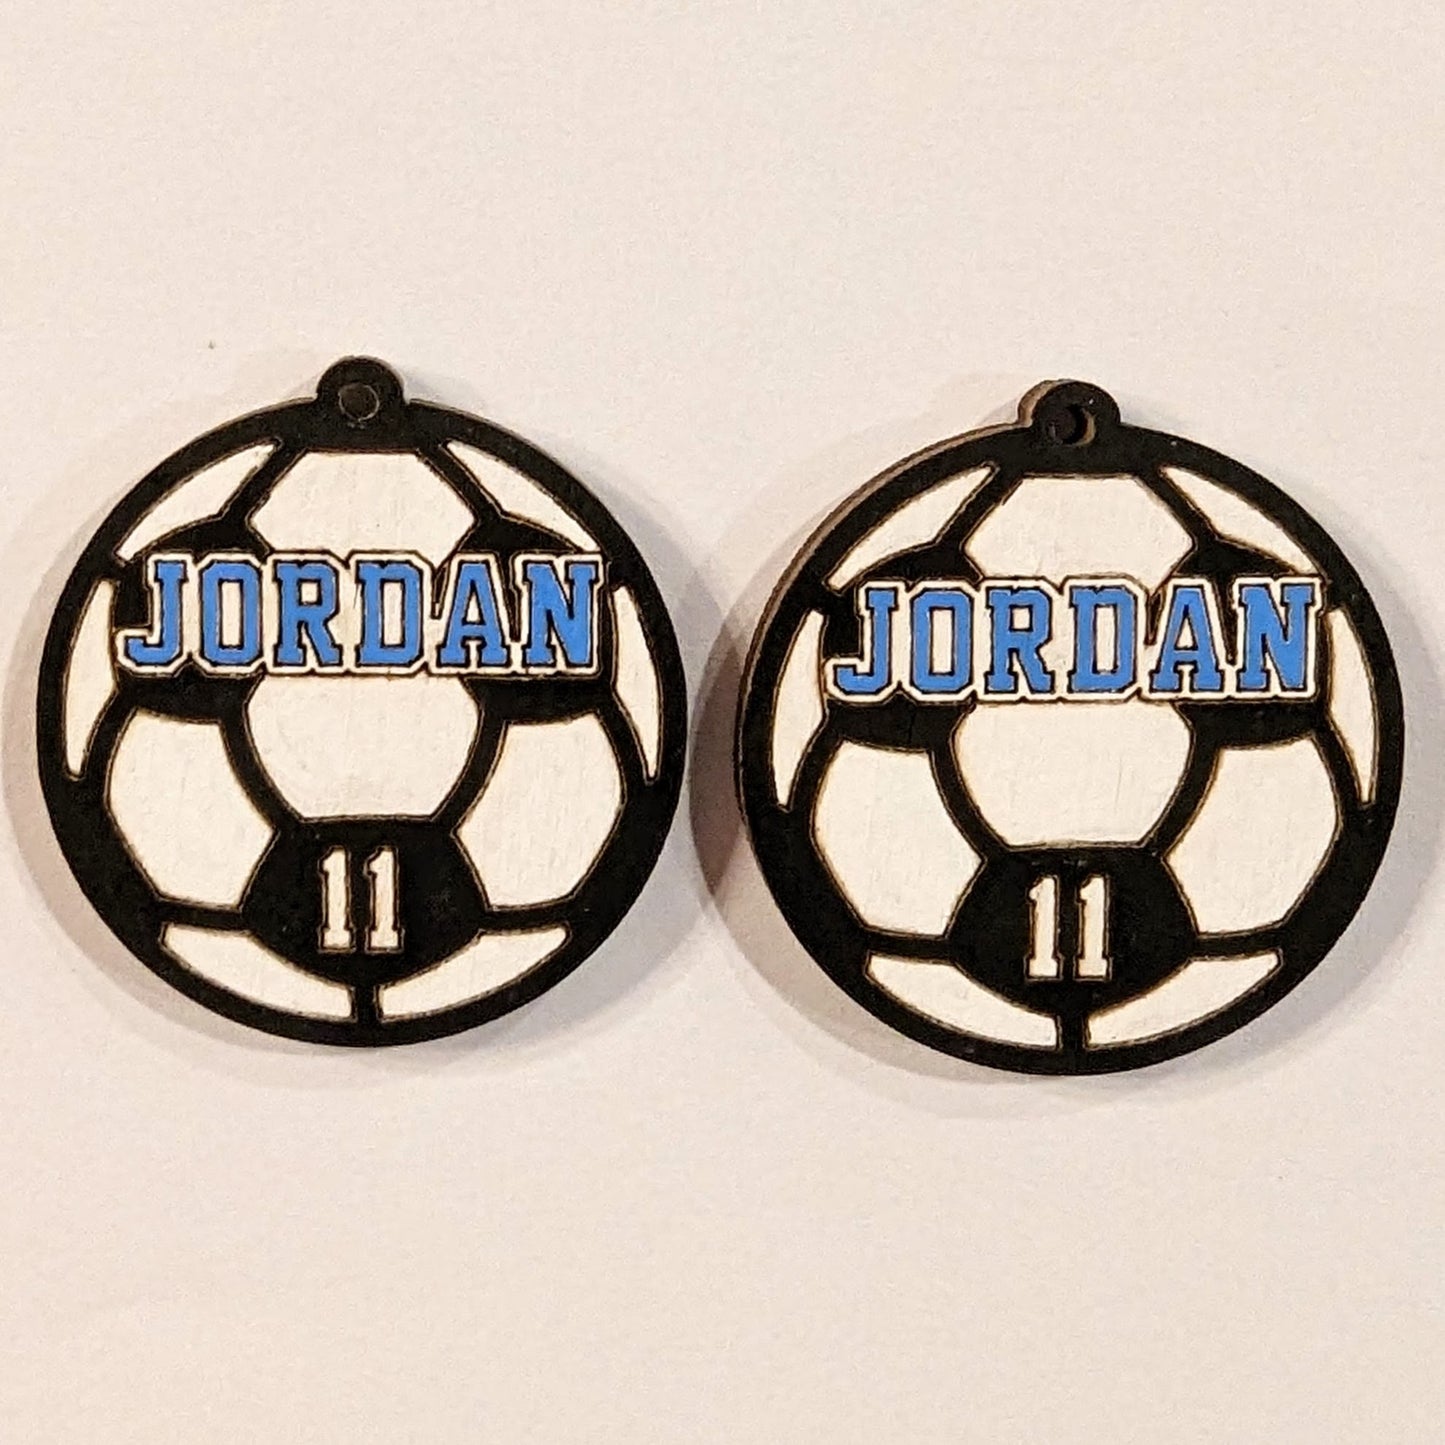 Personalized Soccer Earrings